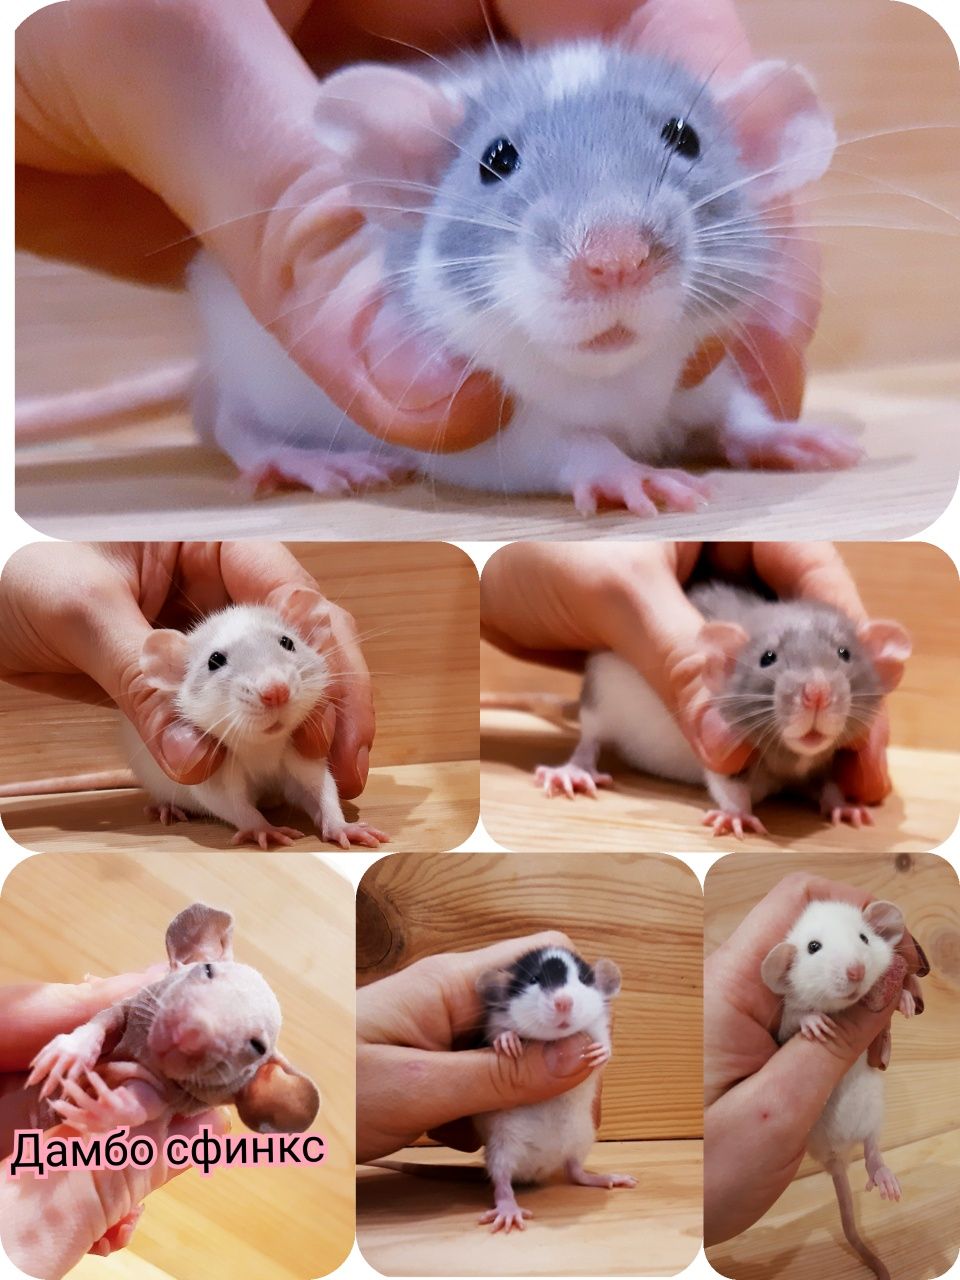 Крысы дамбо+клетки,крысята дамбо,крыски дамбо